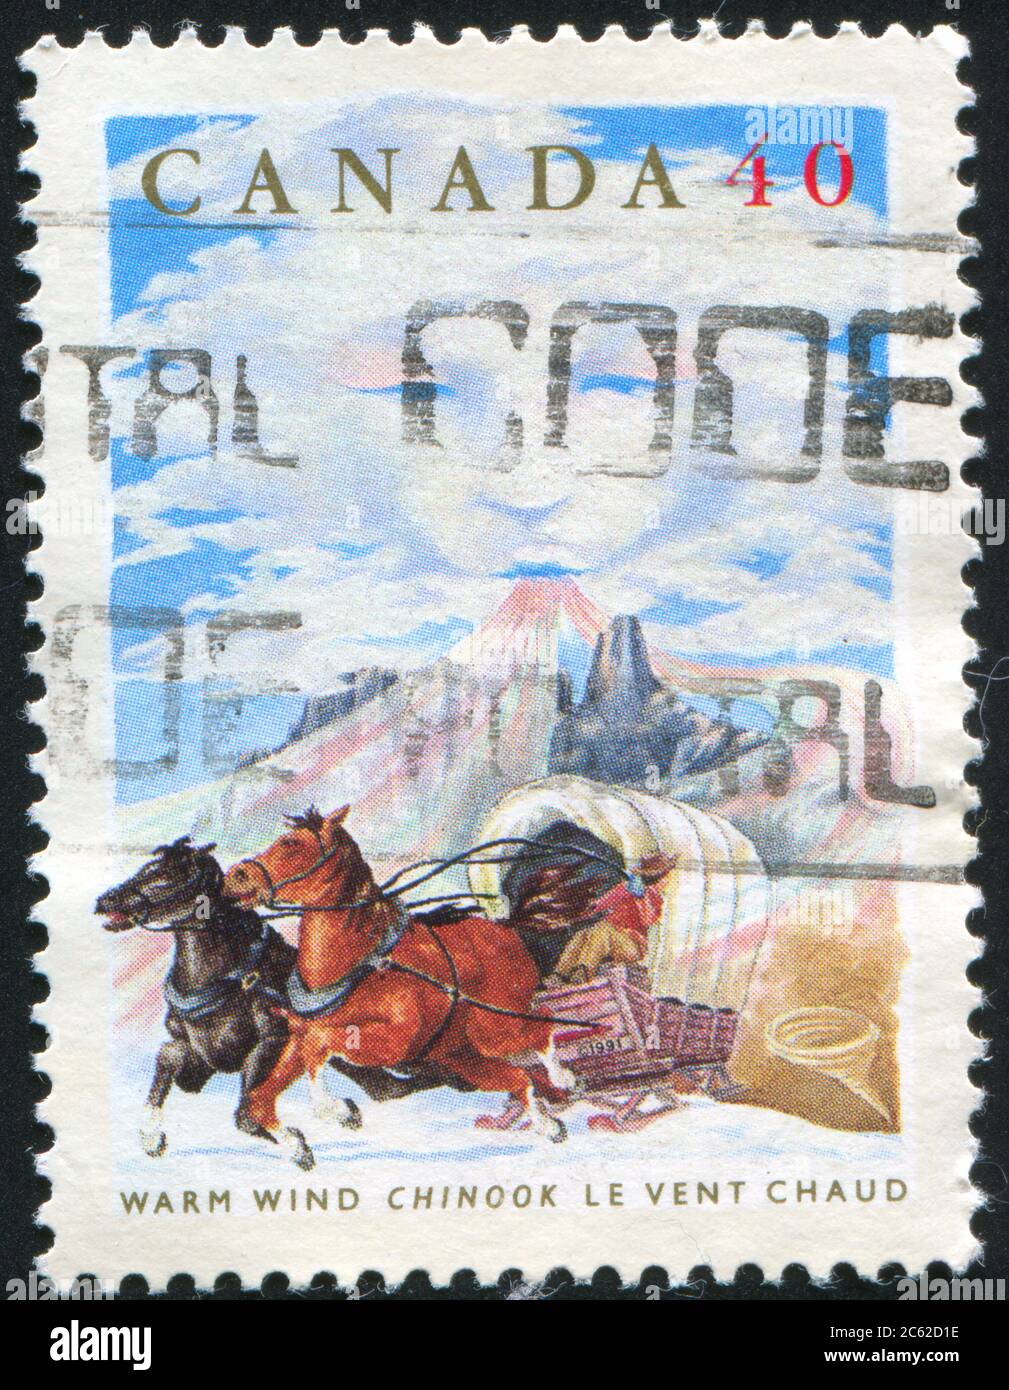 KANADA - UM 1991: Briefmarke gedruckt von Kanada, zeigt Folktales, Chinook Wind, um 1991 Stockfoto